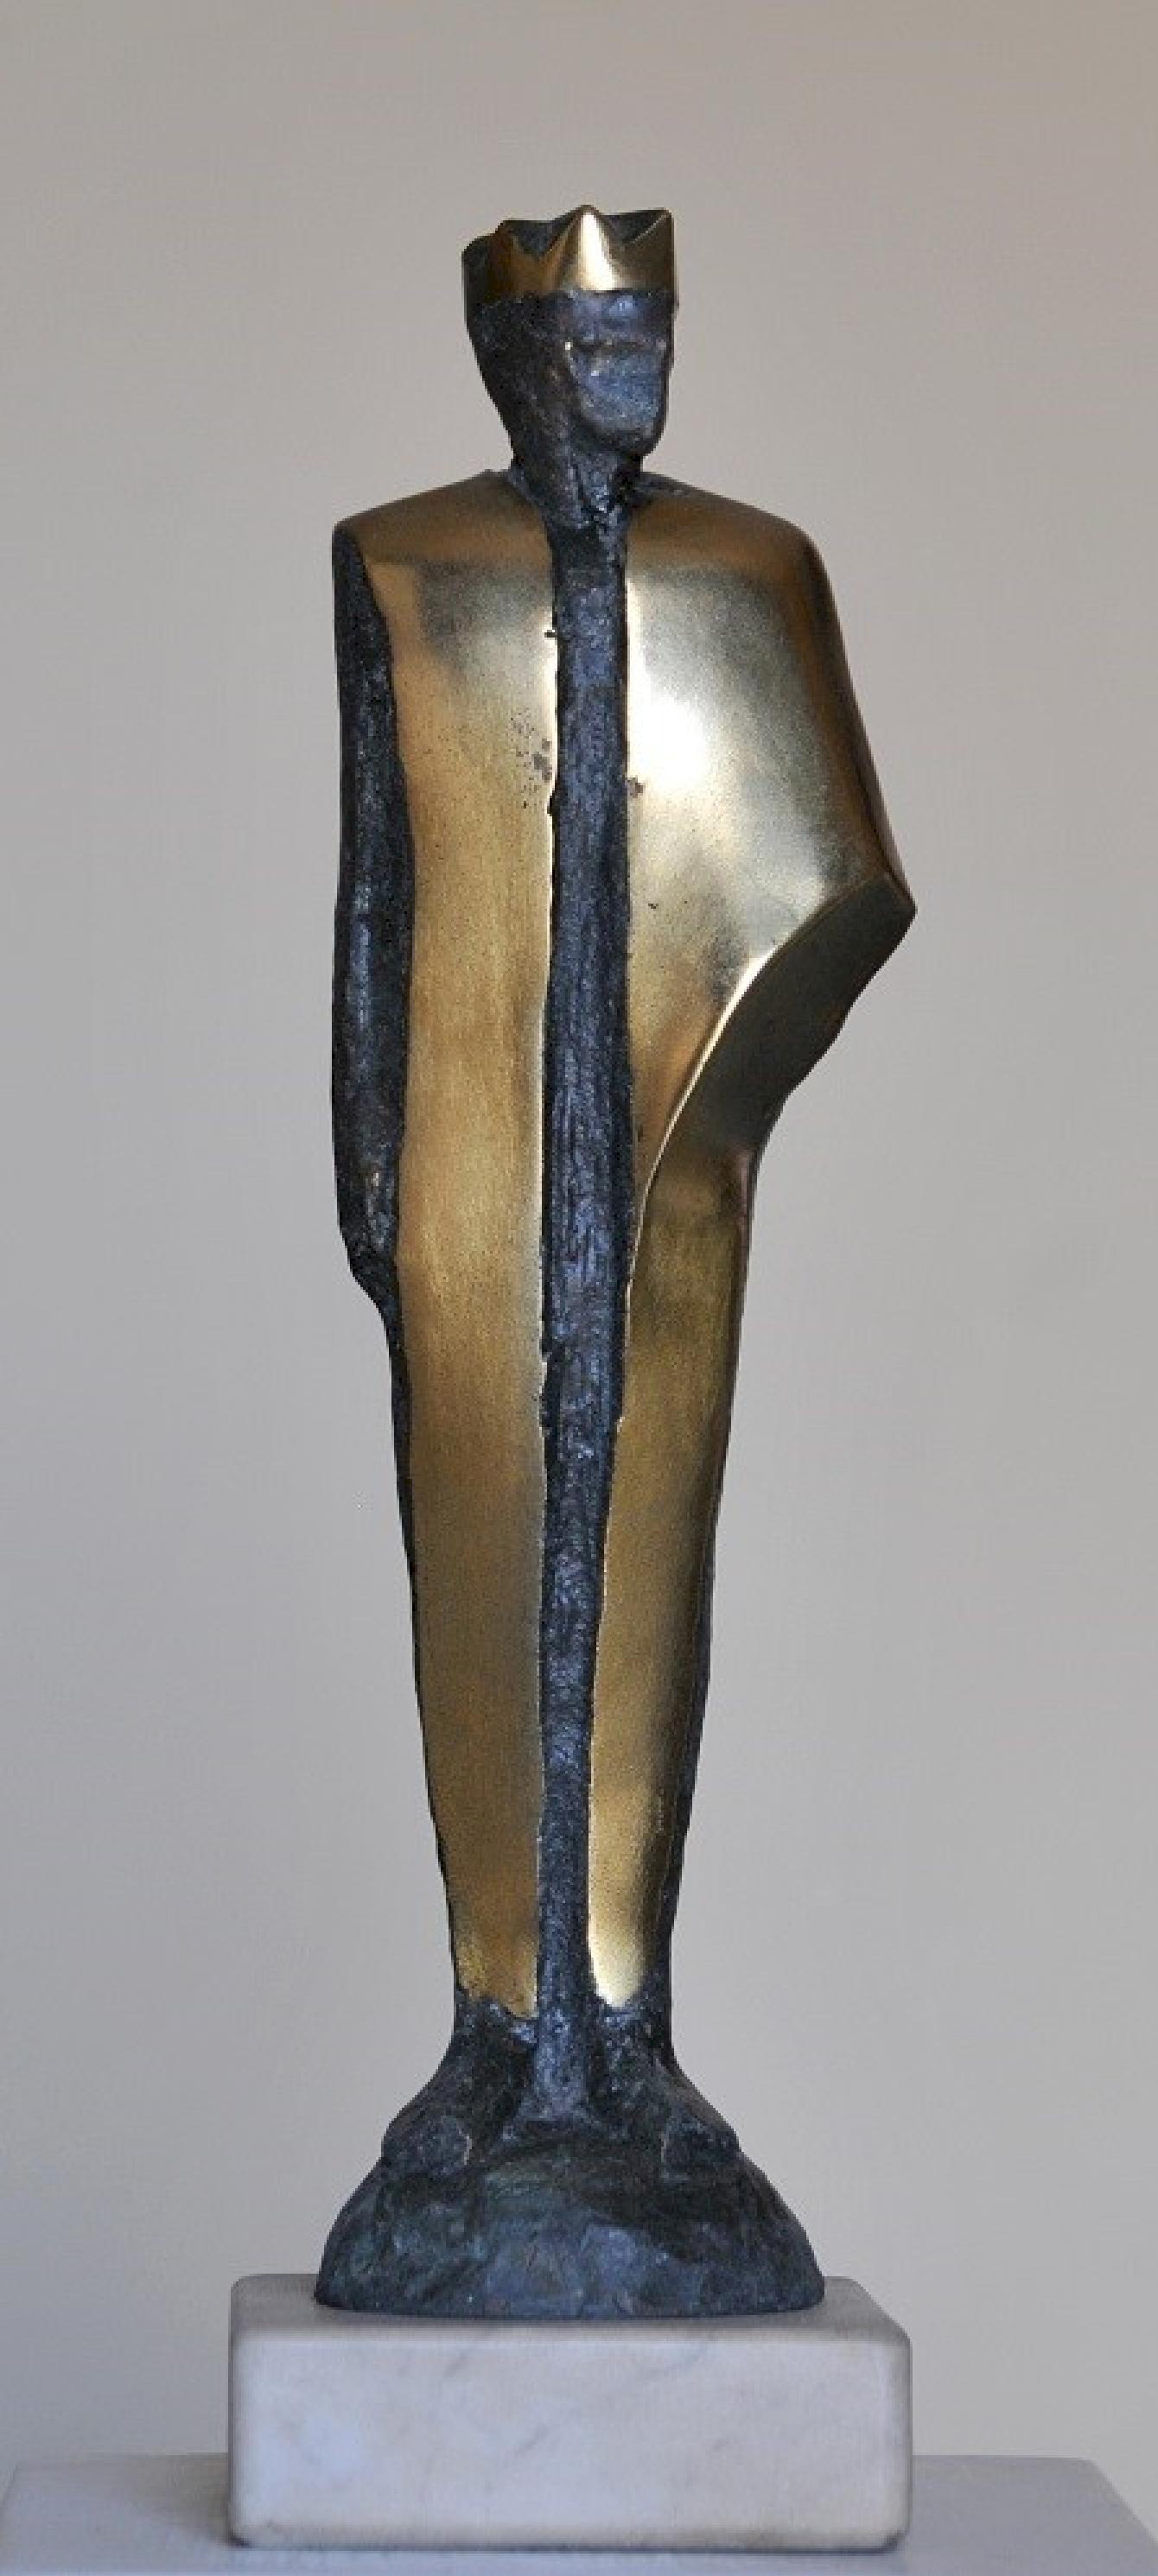 Sculpture en bronze "King I" 16" x 4" x 3" inch by Sarkis Tossonian		

Sarkis Tossoonian est né à Alexandrie en 1953. Il est diplômé de la Faculté des Beaux-Arts/Sculpture en 1979. Il a commencé à exposer dans des expositions individuelles et